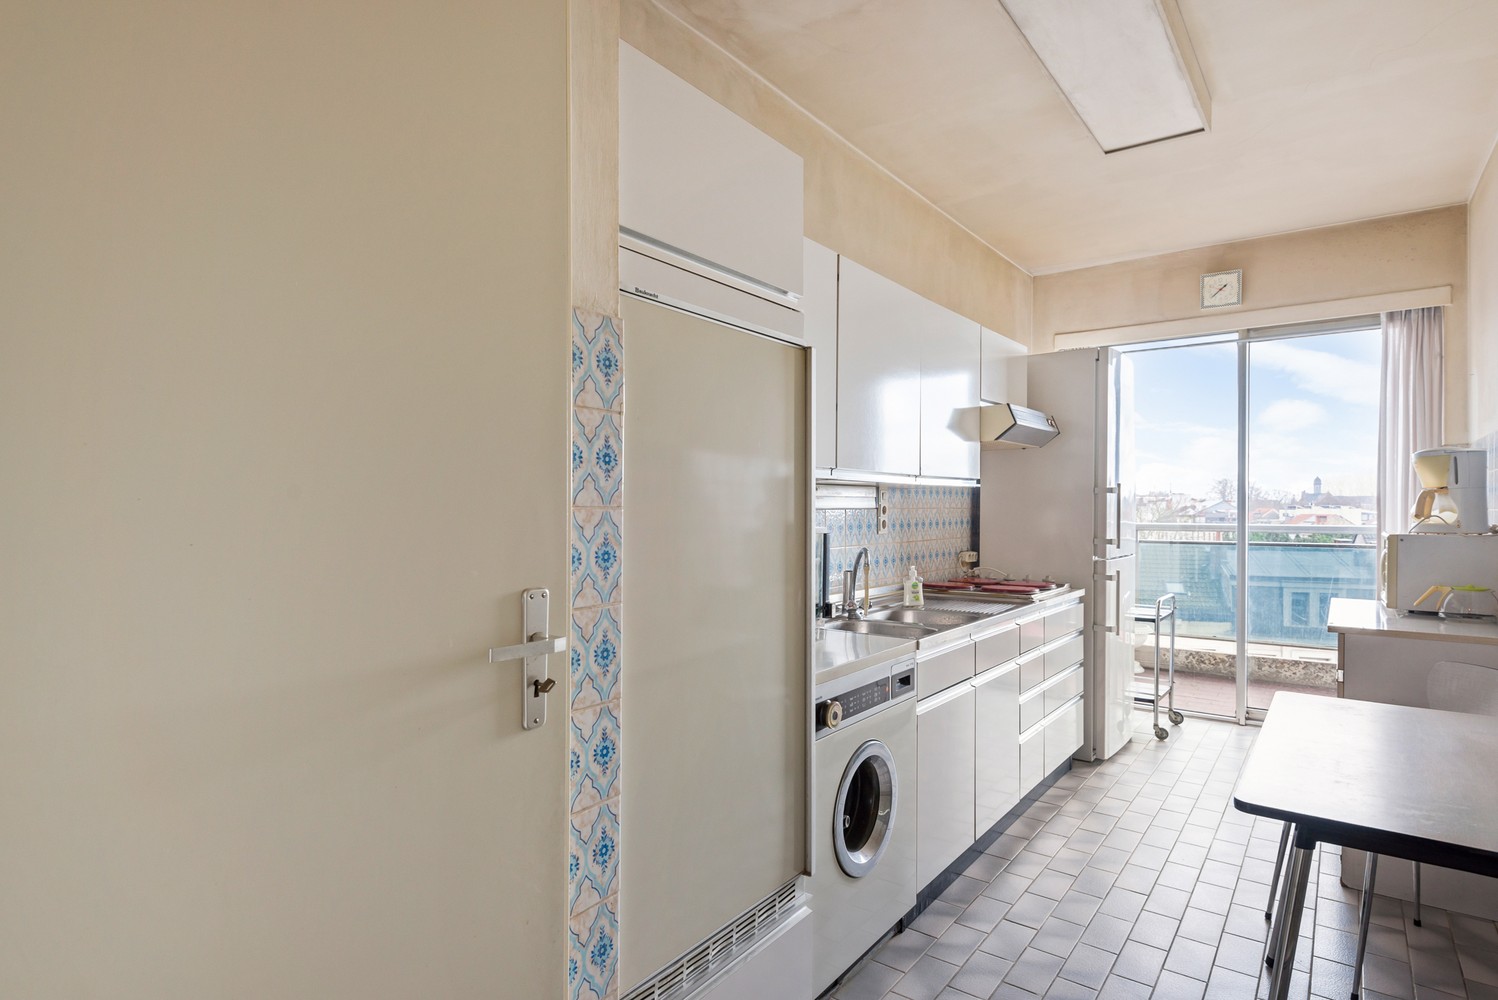 Te renoveren appartement met 2 slaapkamers, 2 terrassen én garagebox in Berchem! afbeelding 10